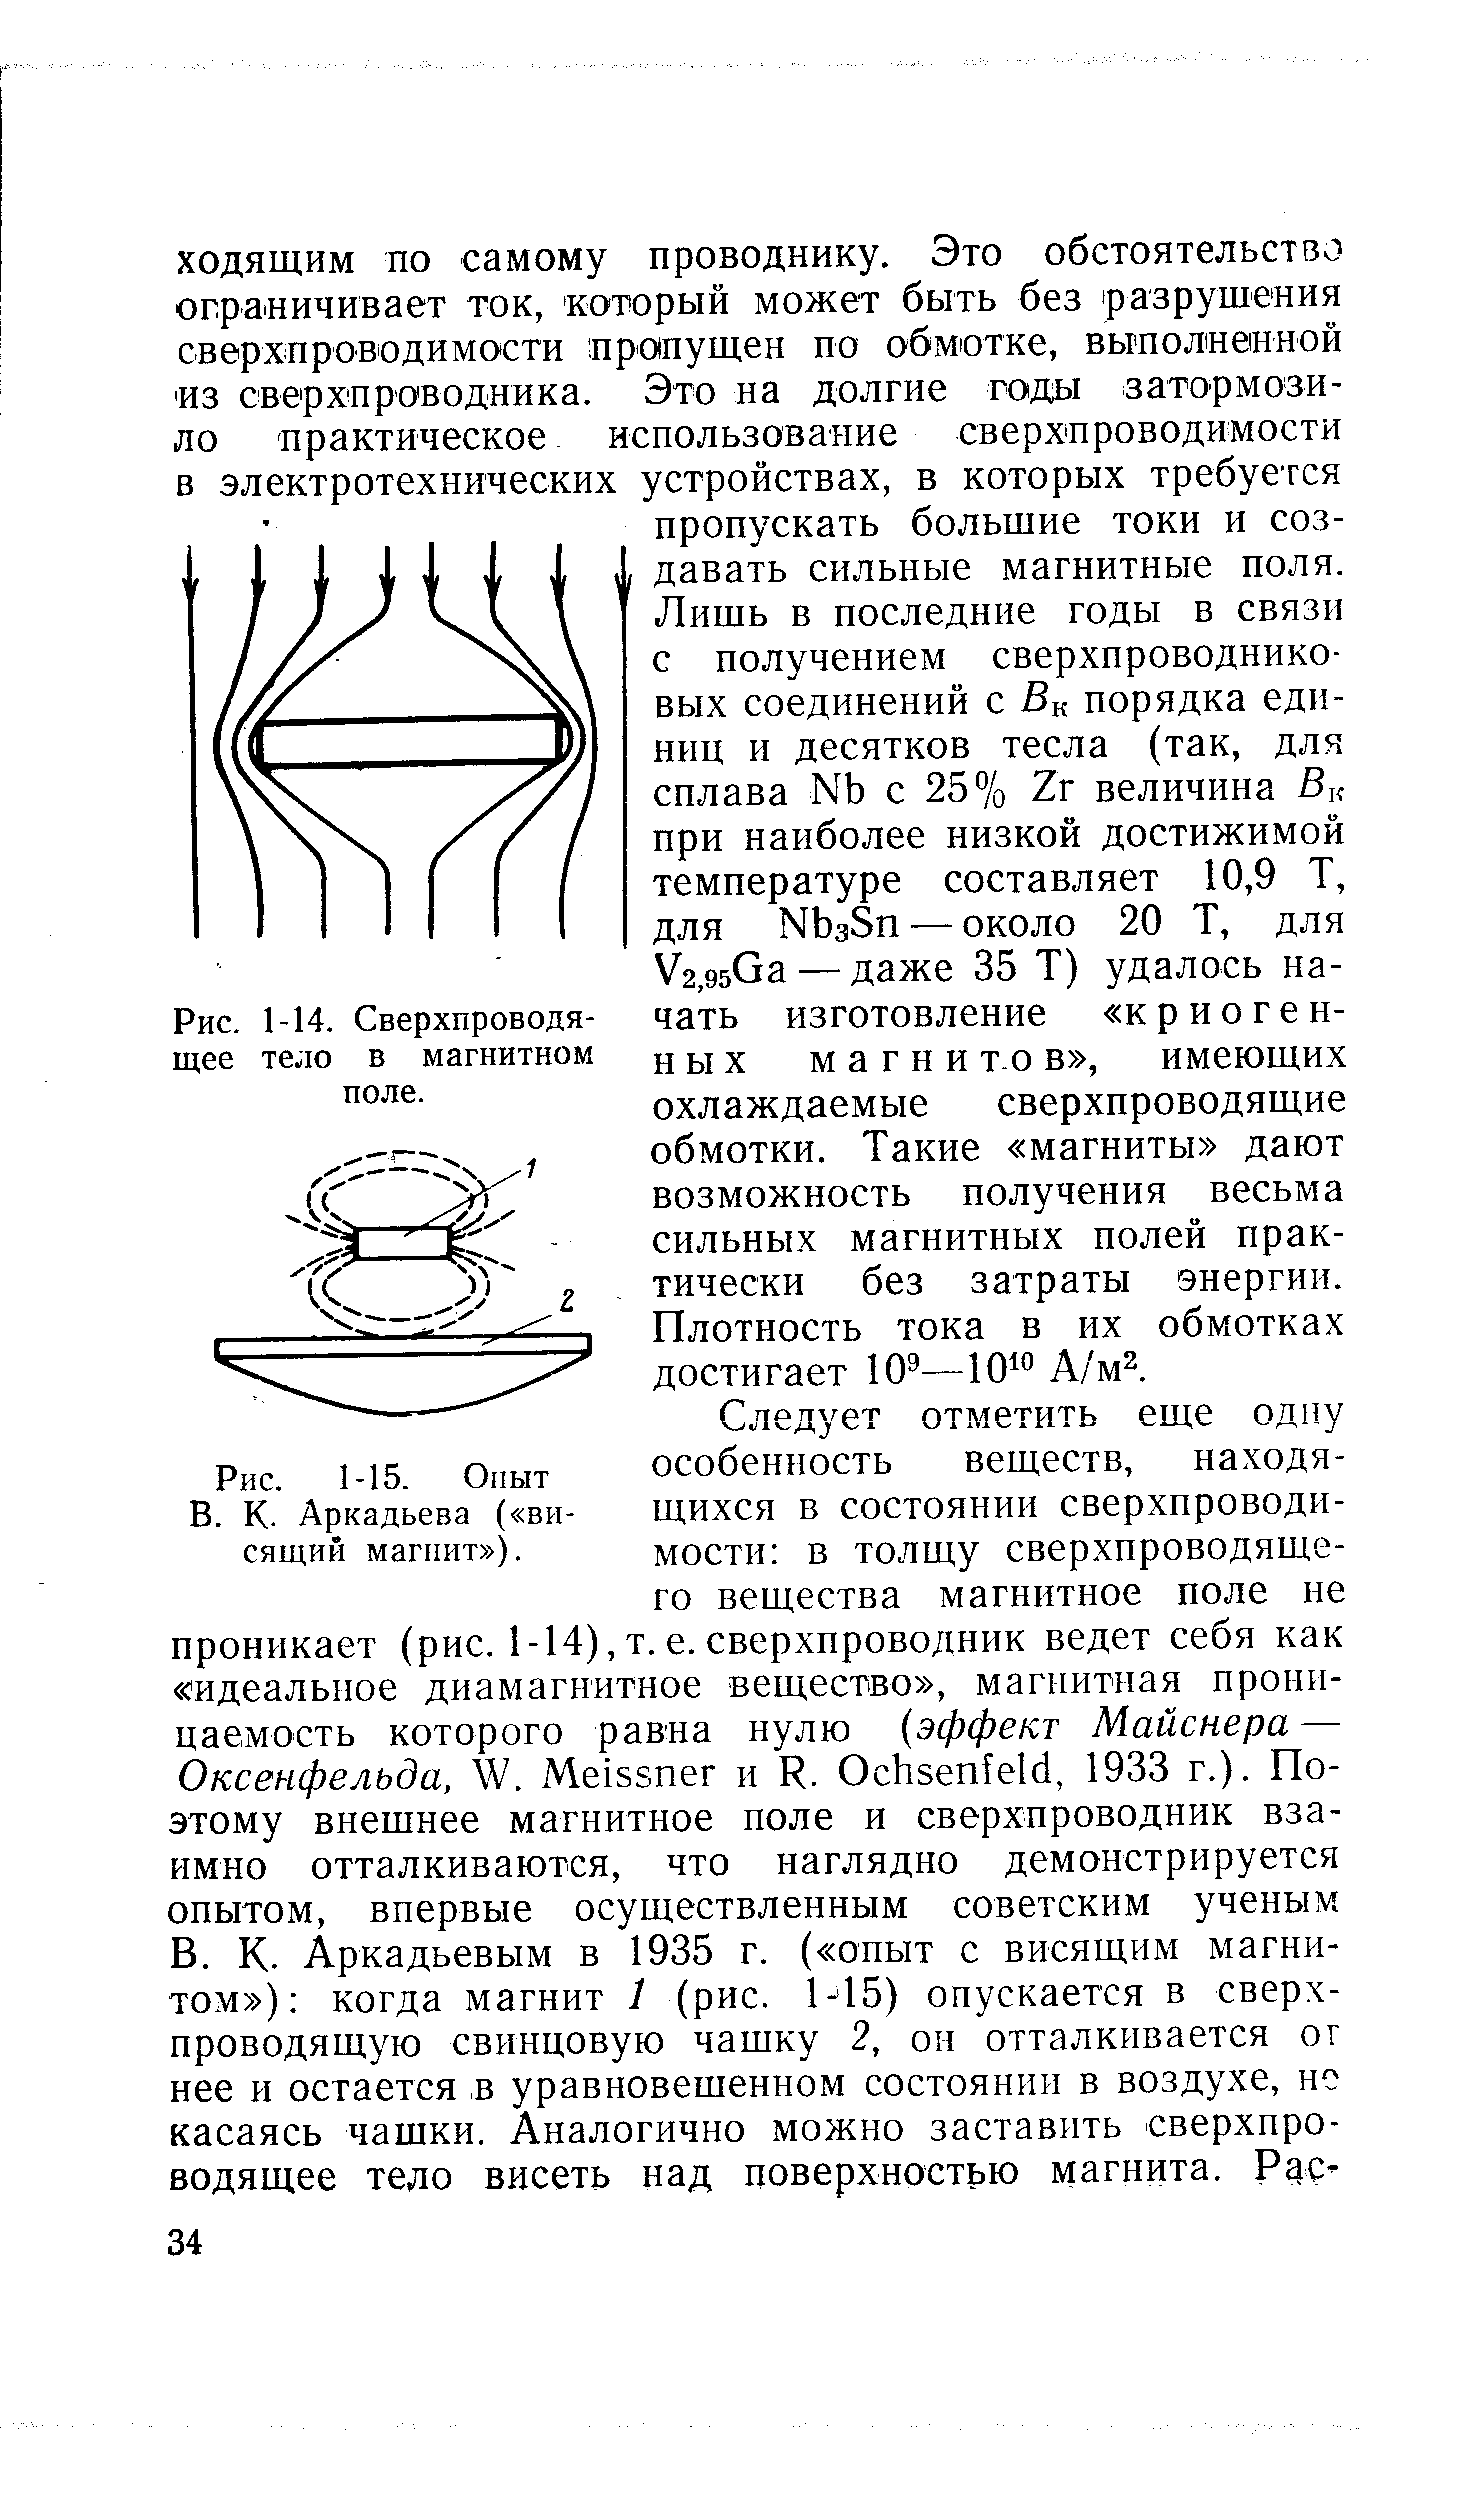 Рис. 1-15. Опыт В. К. Аркадьева ( висящий магнит ).
